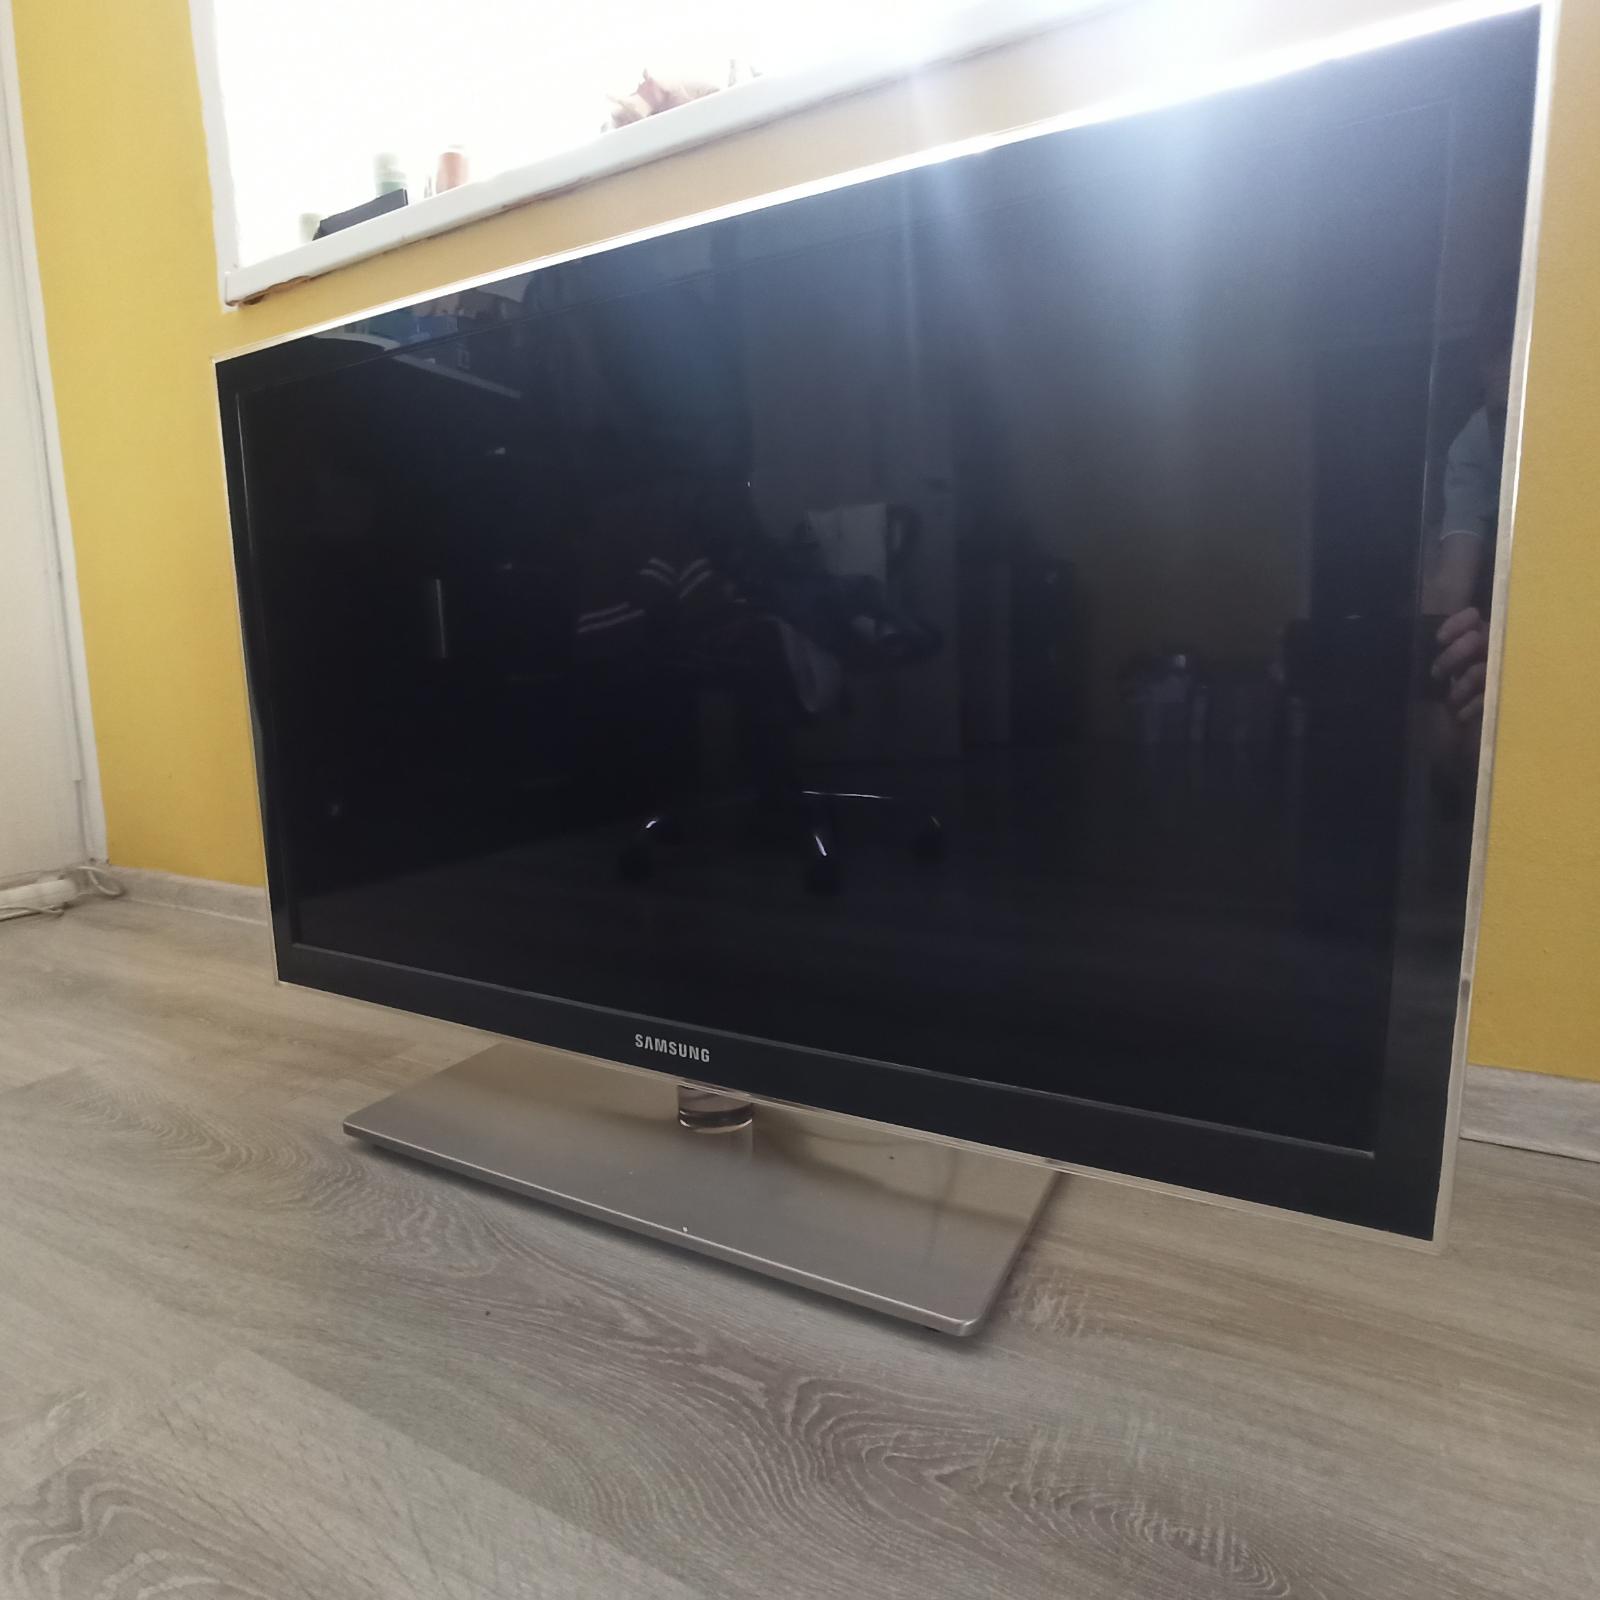 Led TV Samsung UE40C6000 - TV, audio, video